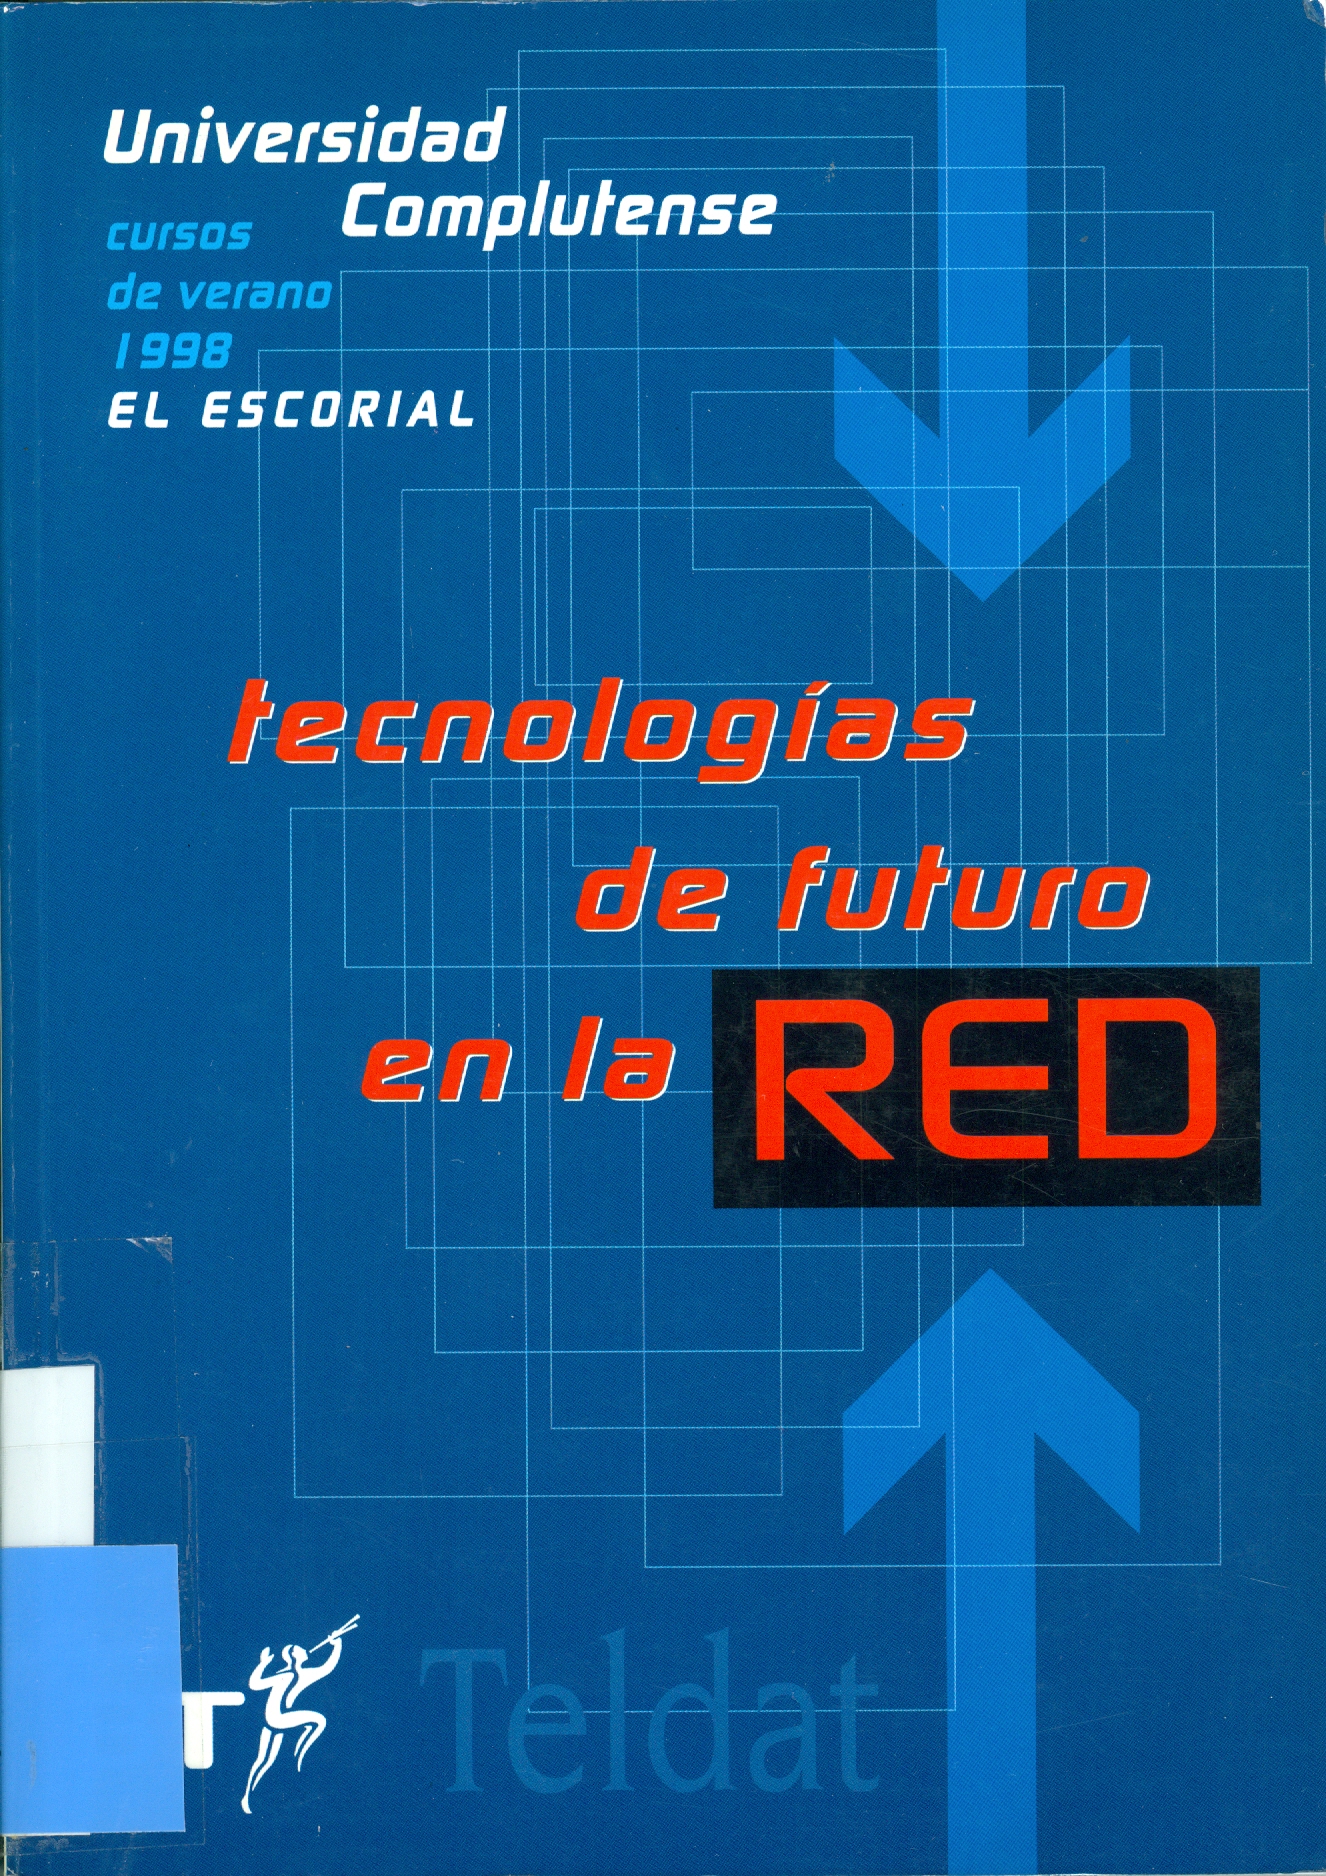 Imagen de portada del libro Tecnologías de futuro en la red